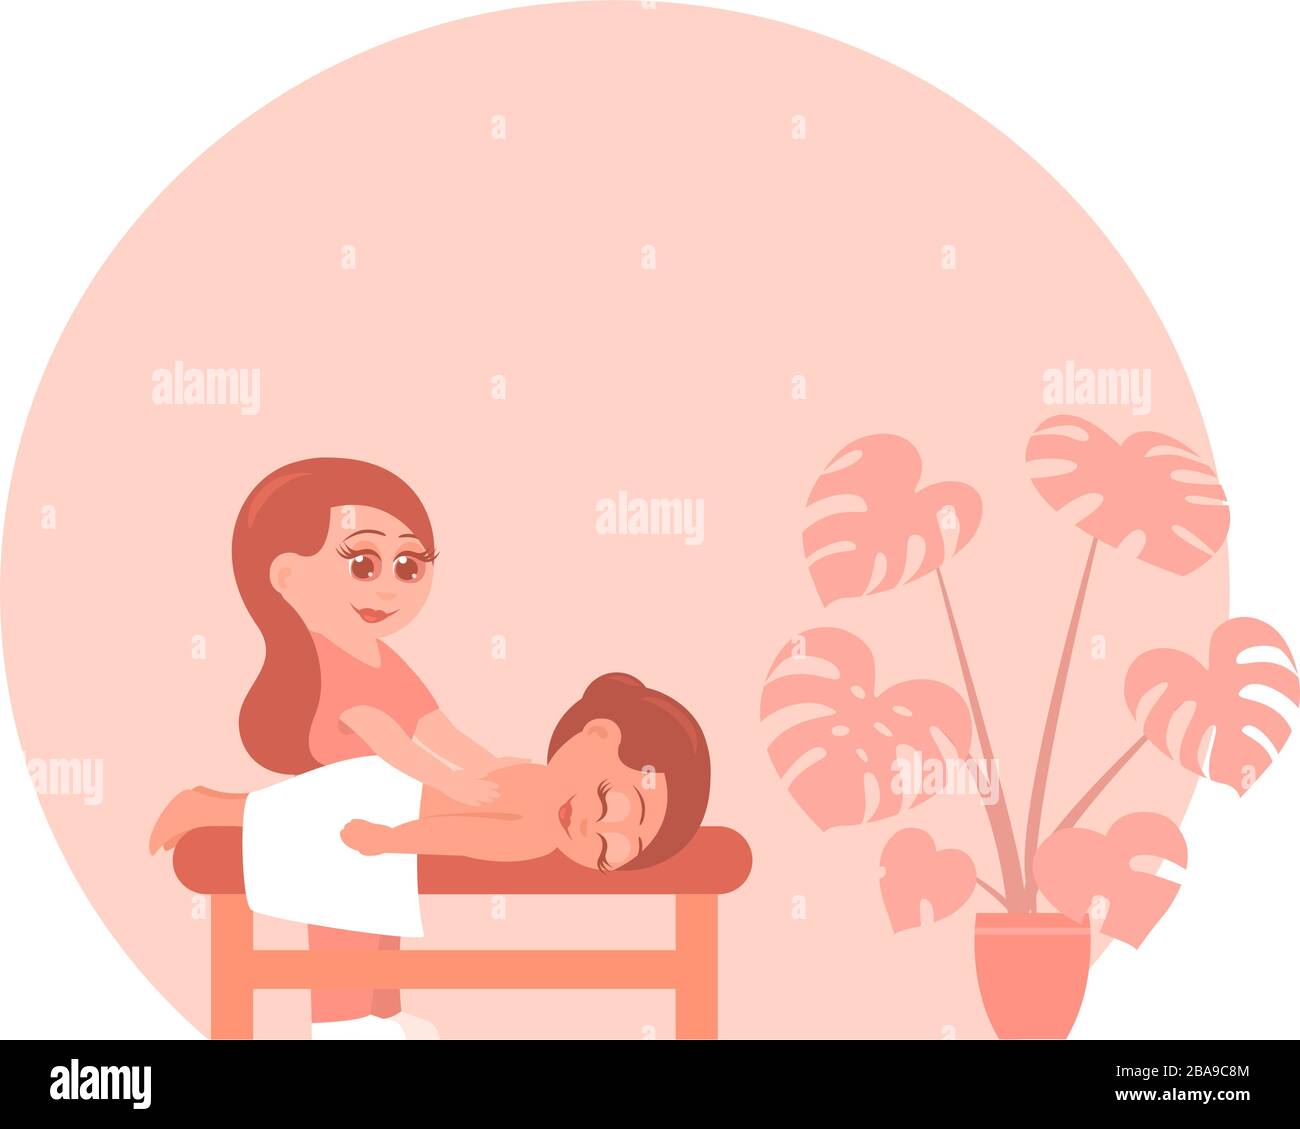 Frau bei einem Massageverfahren in einem Schönheitssalon. Platz für Text. Vektor-Cartoon-Illustration. Stock Vektor